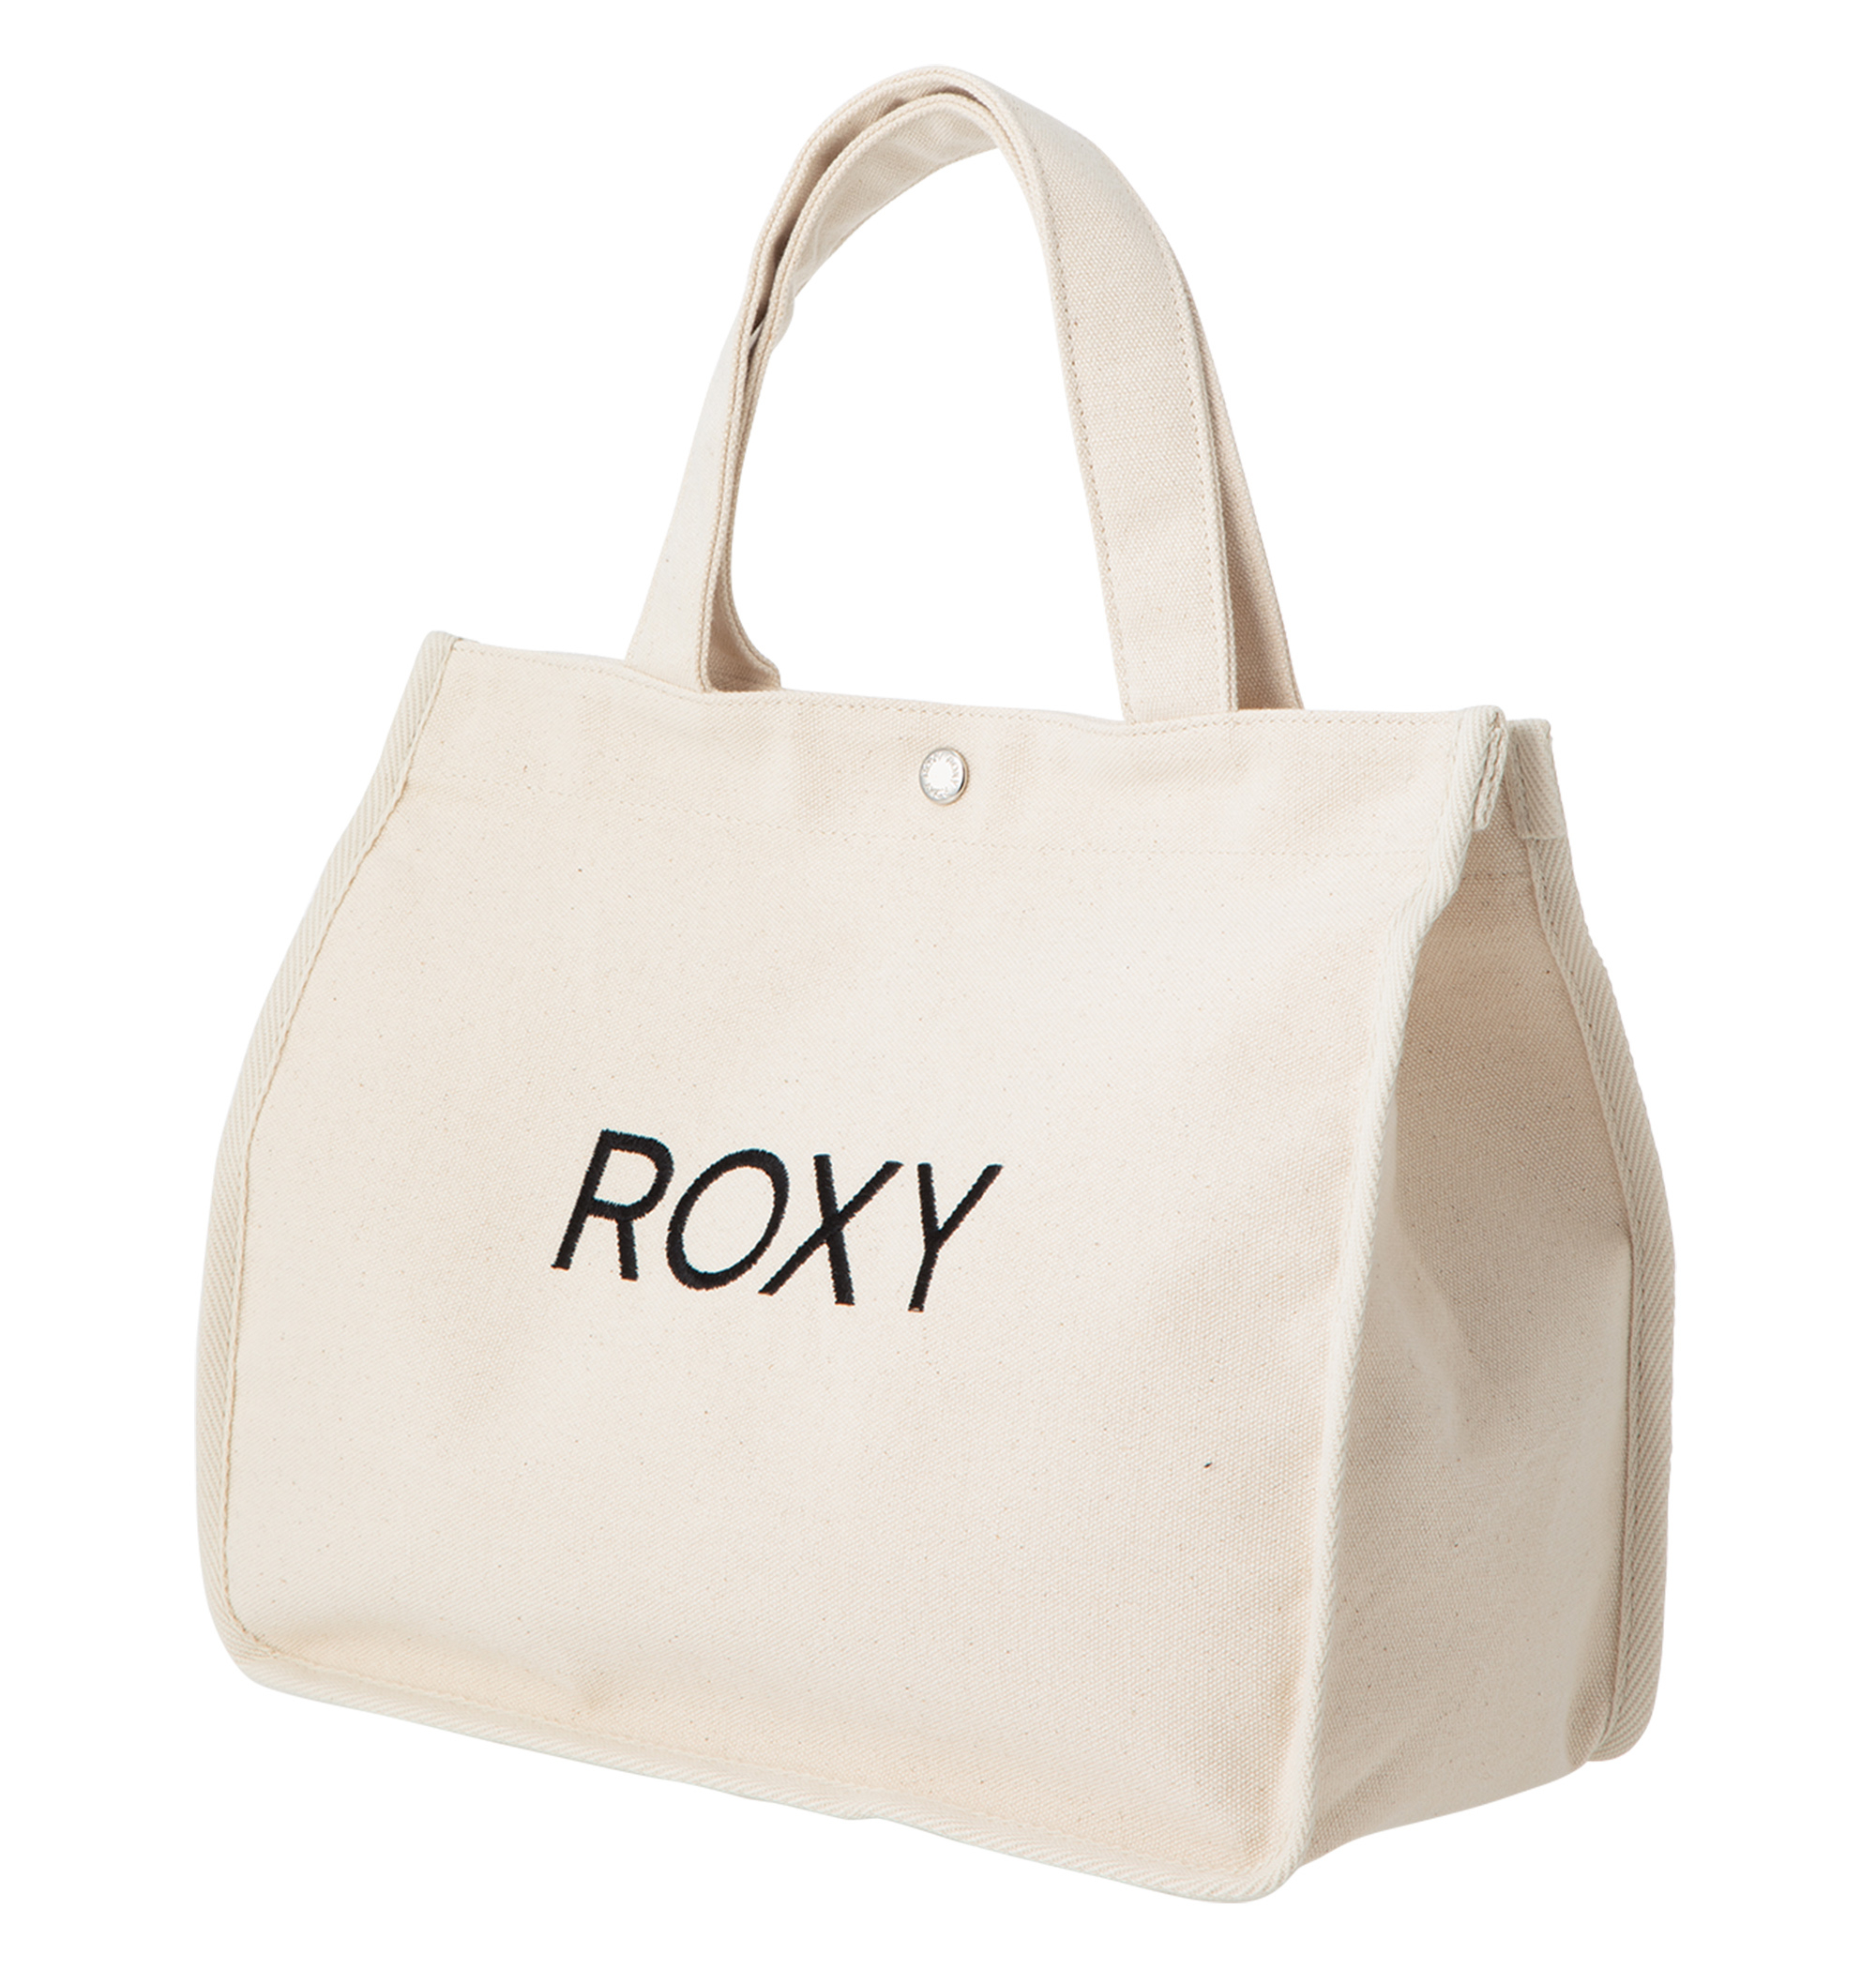 UNDER CANVAS フロントのROXYロゴ刺繍がポイントのキャンパストートバッグ